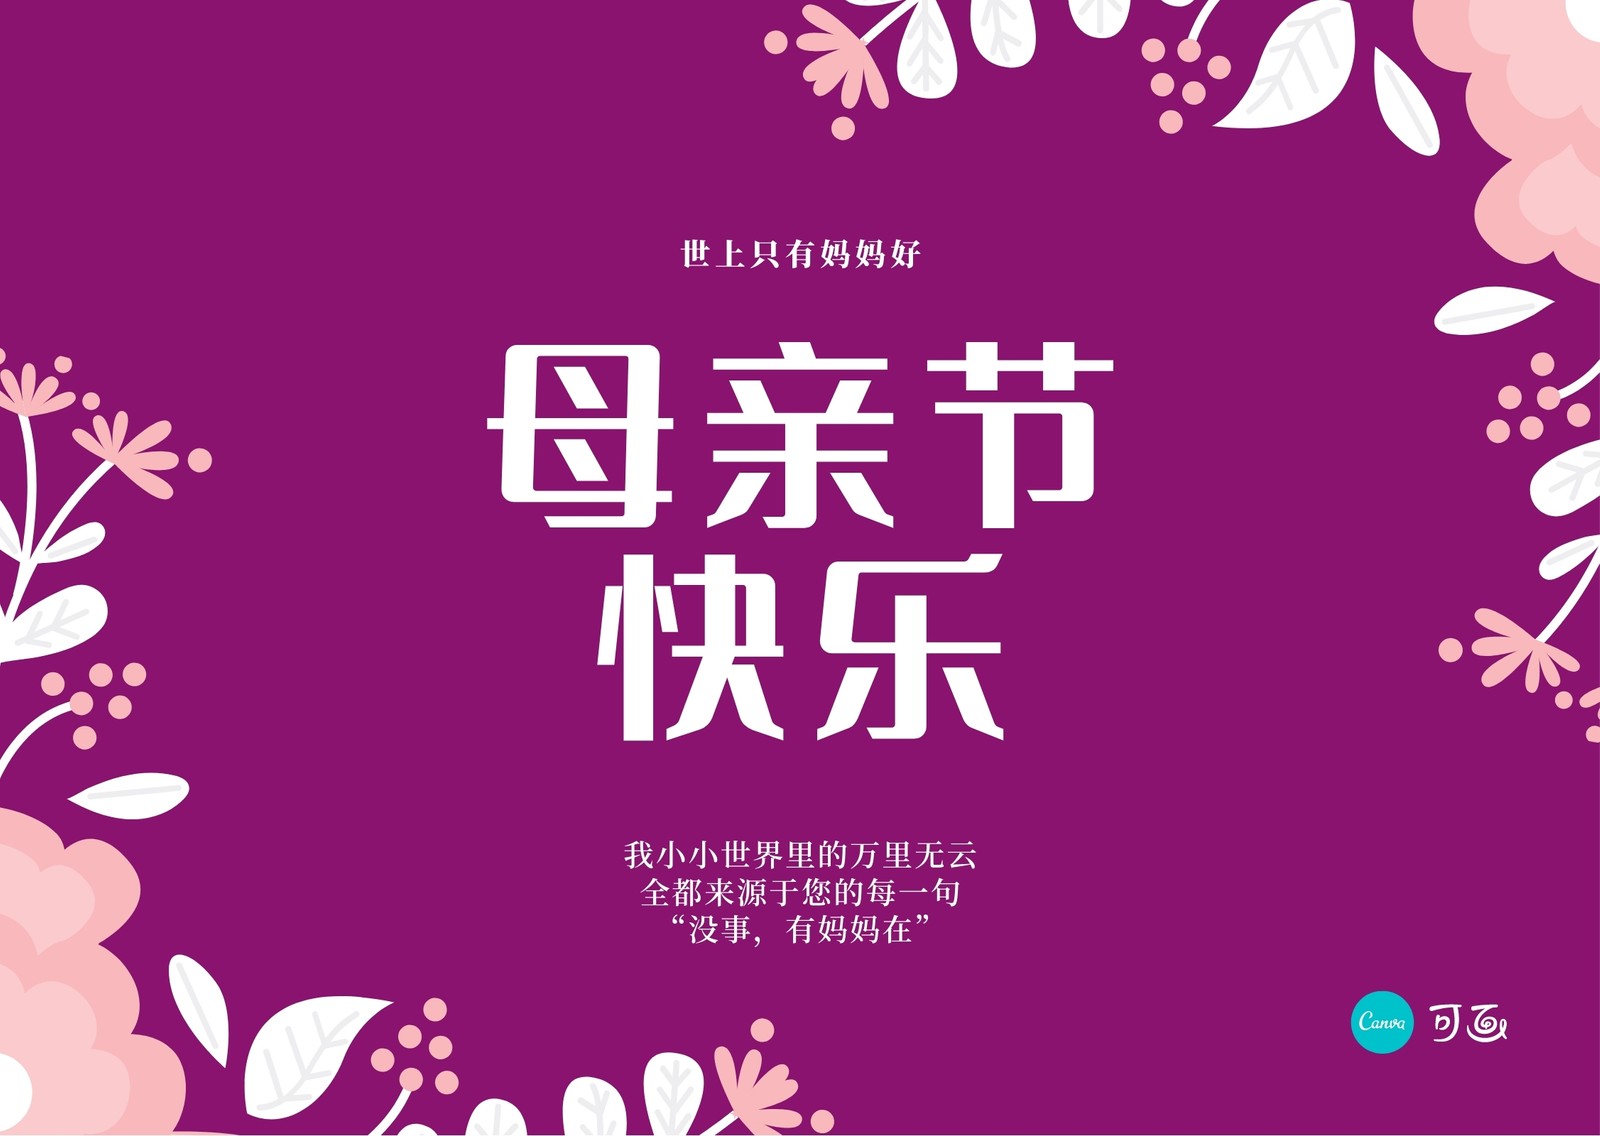 粉白色鲜花插画手绘母亲节节日分享中文微信公众号小图 - 模板 - Canva可画